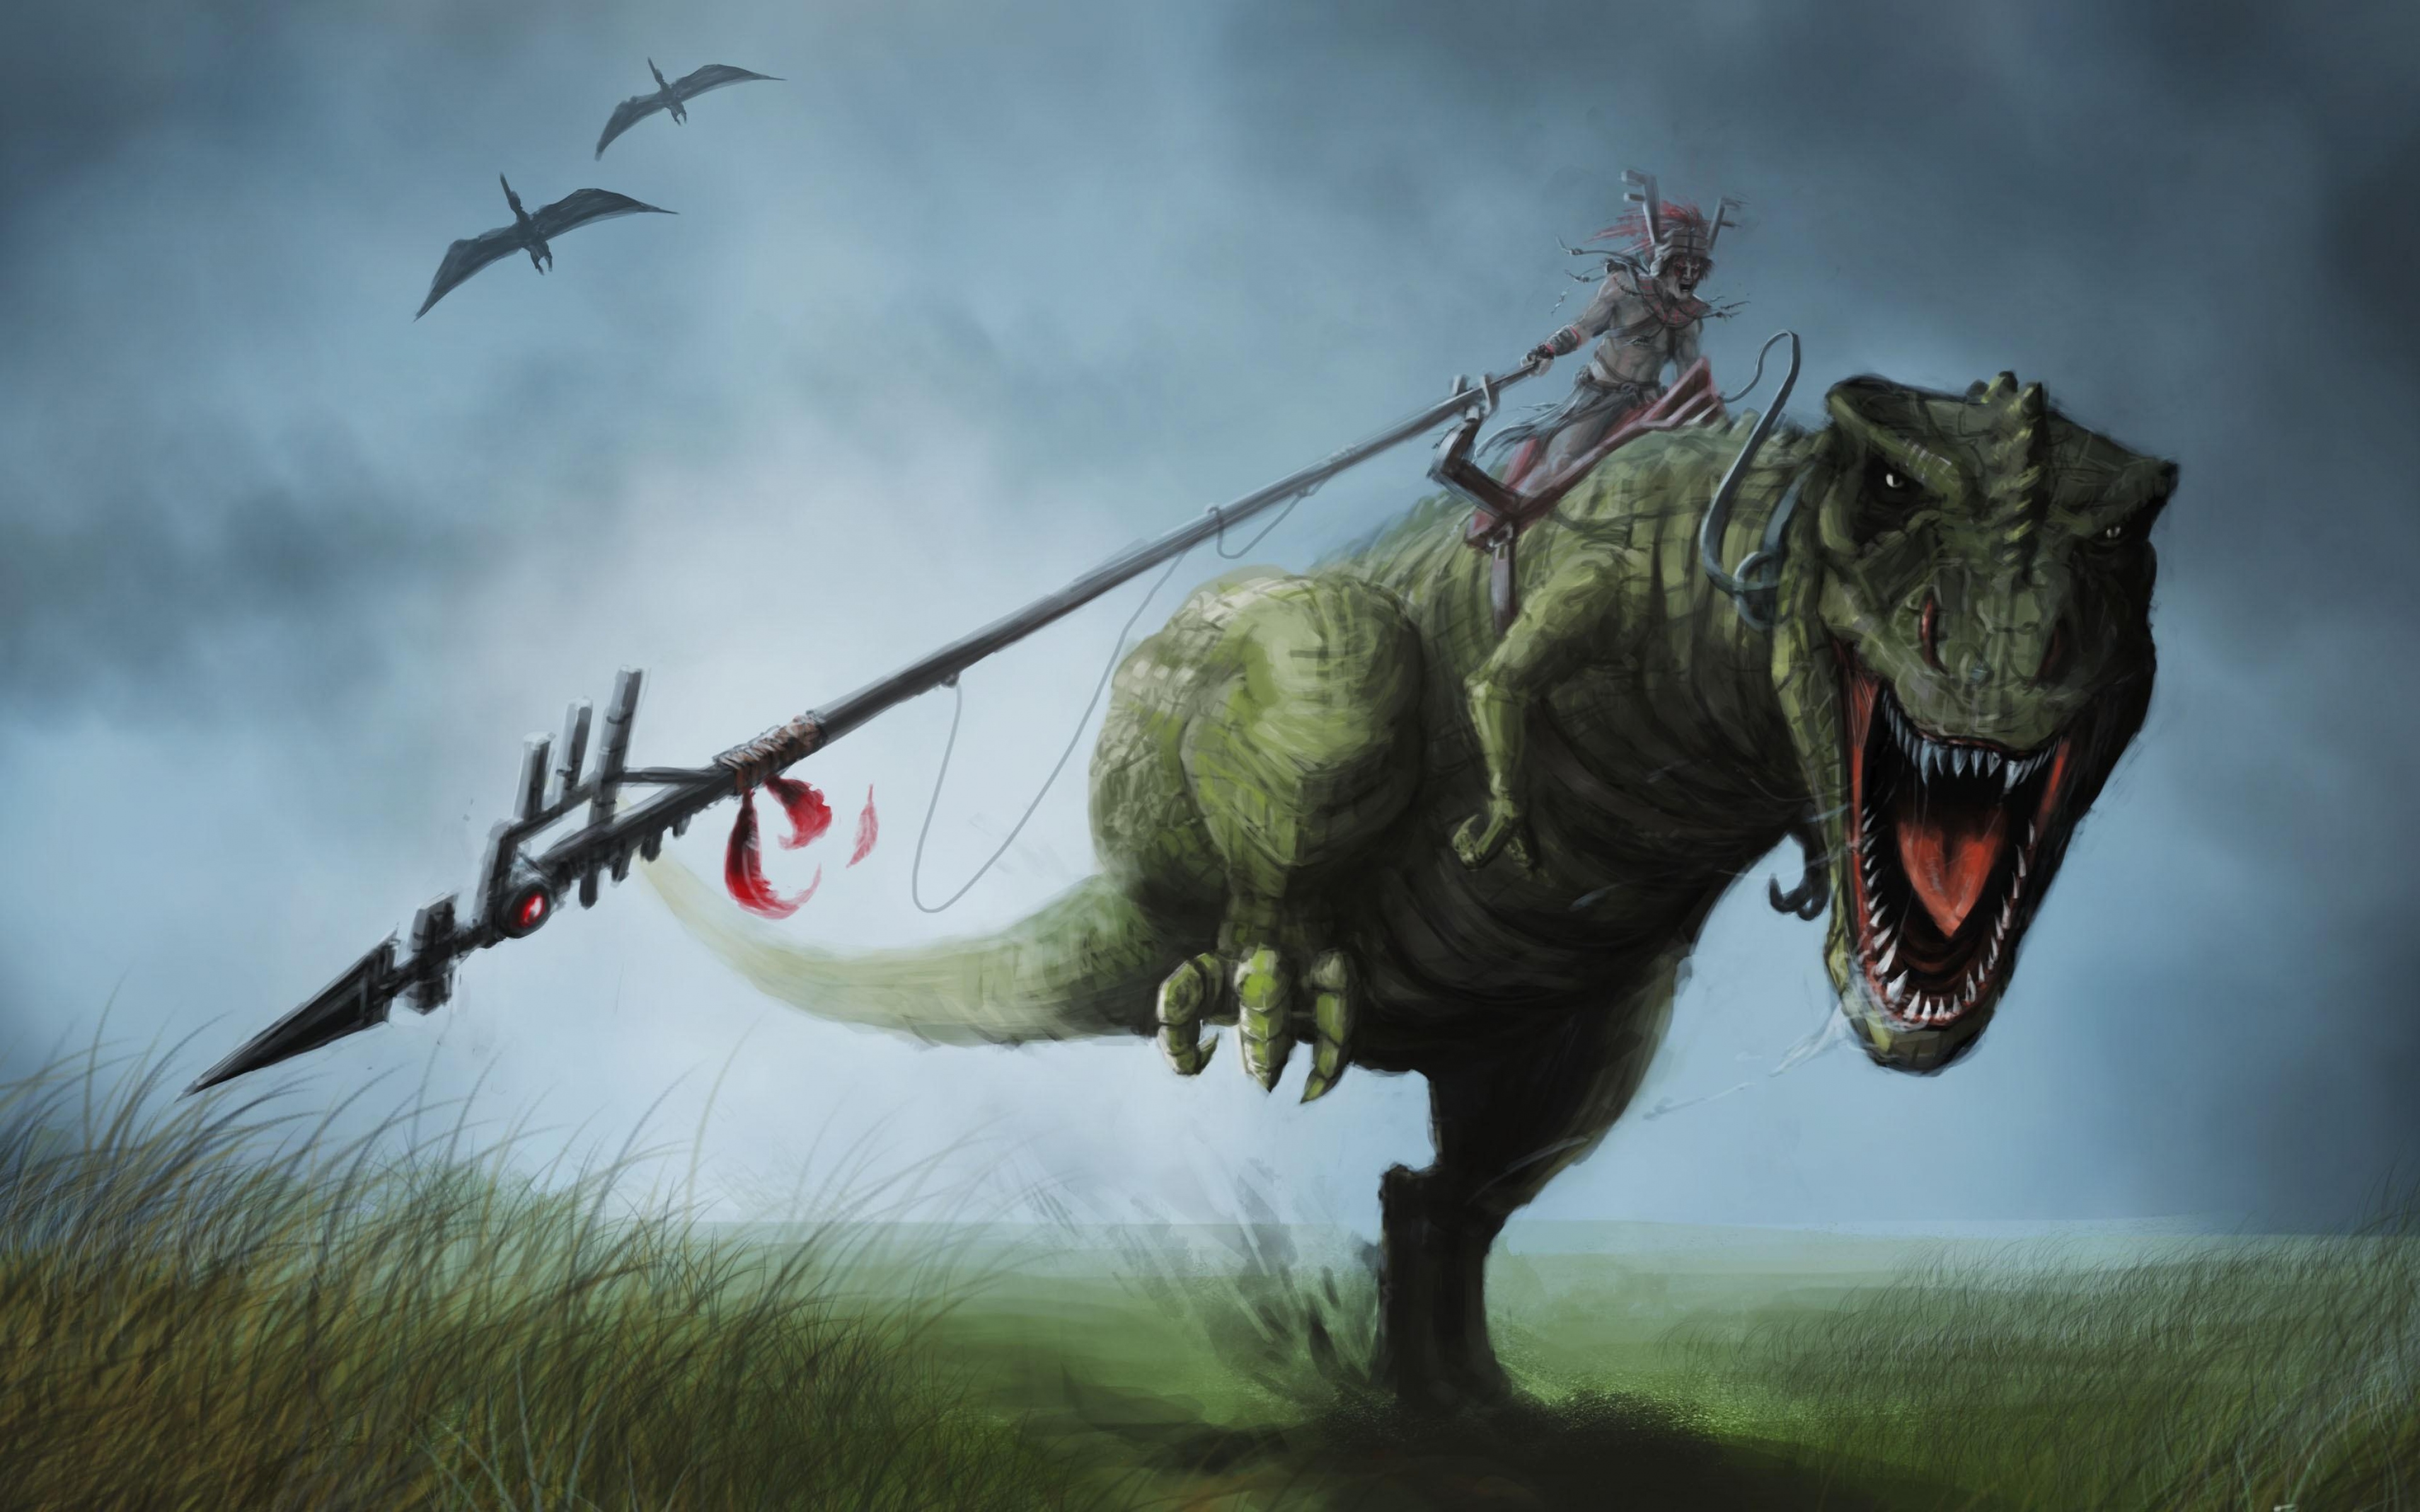 Warrior ride a T-rex by Baz Peden